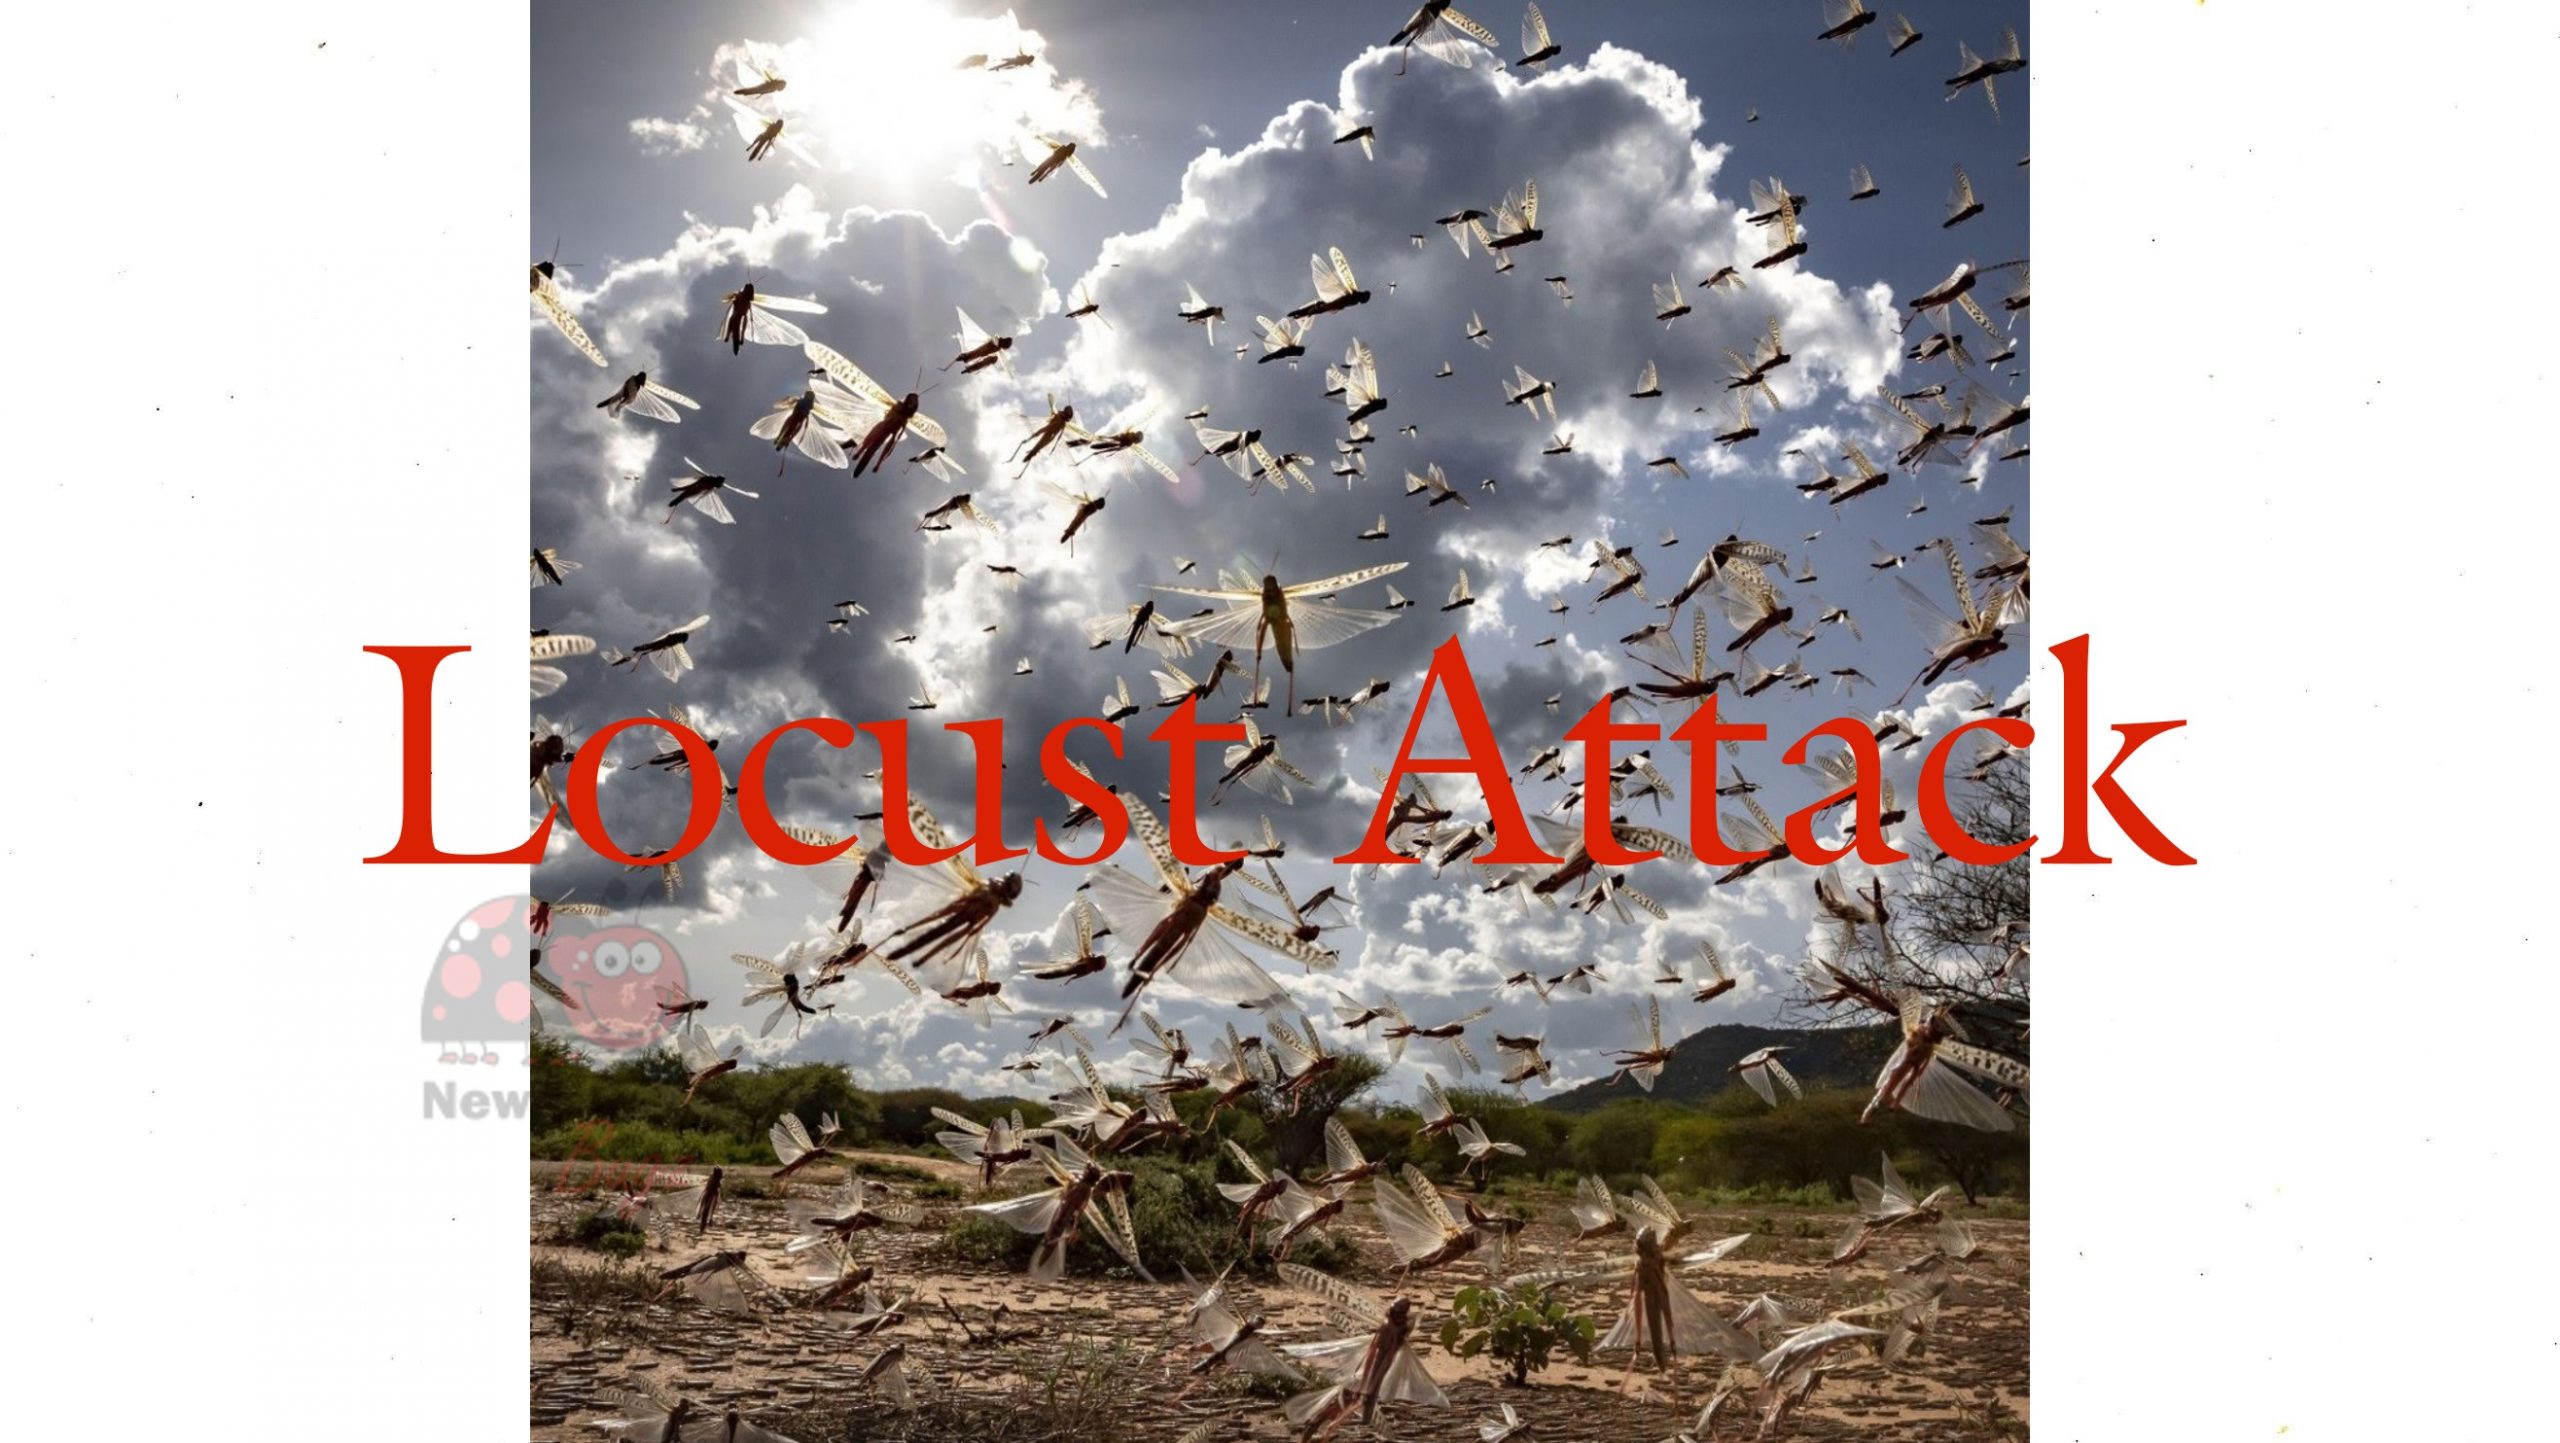 Locust Attack News